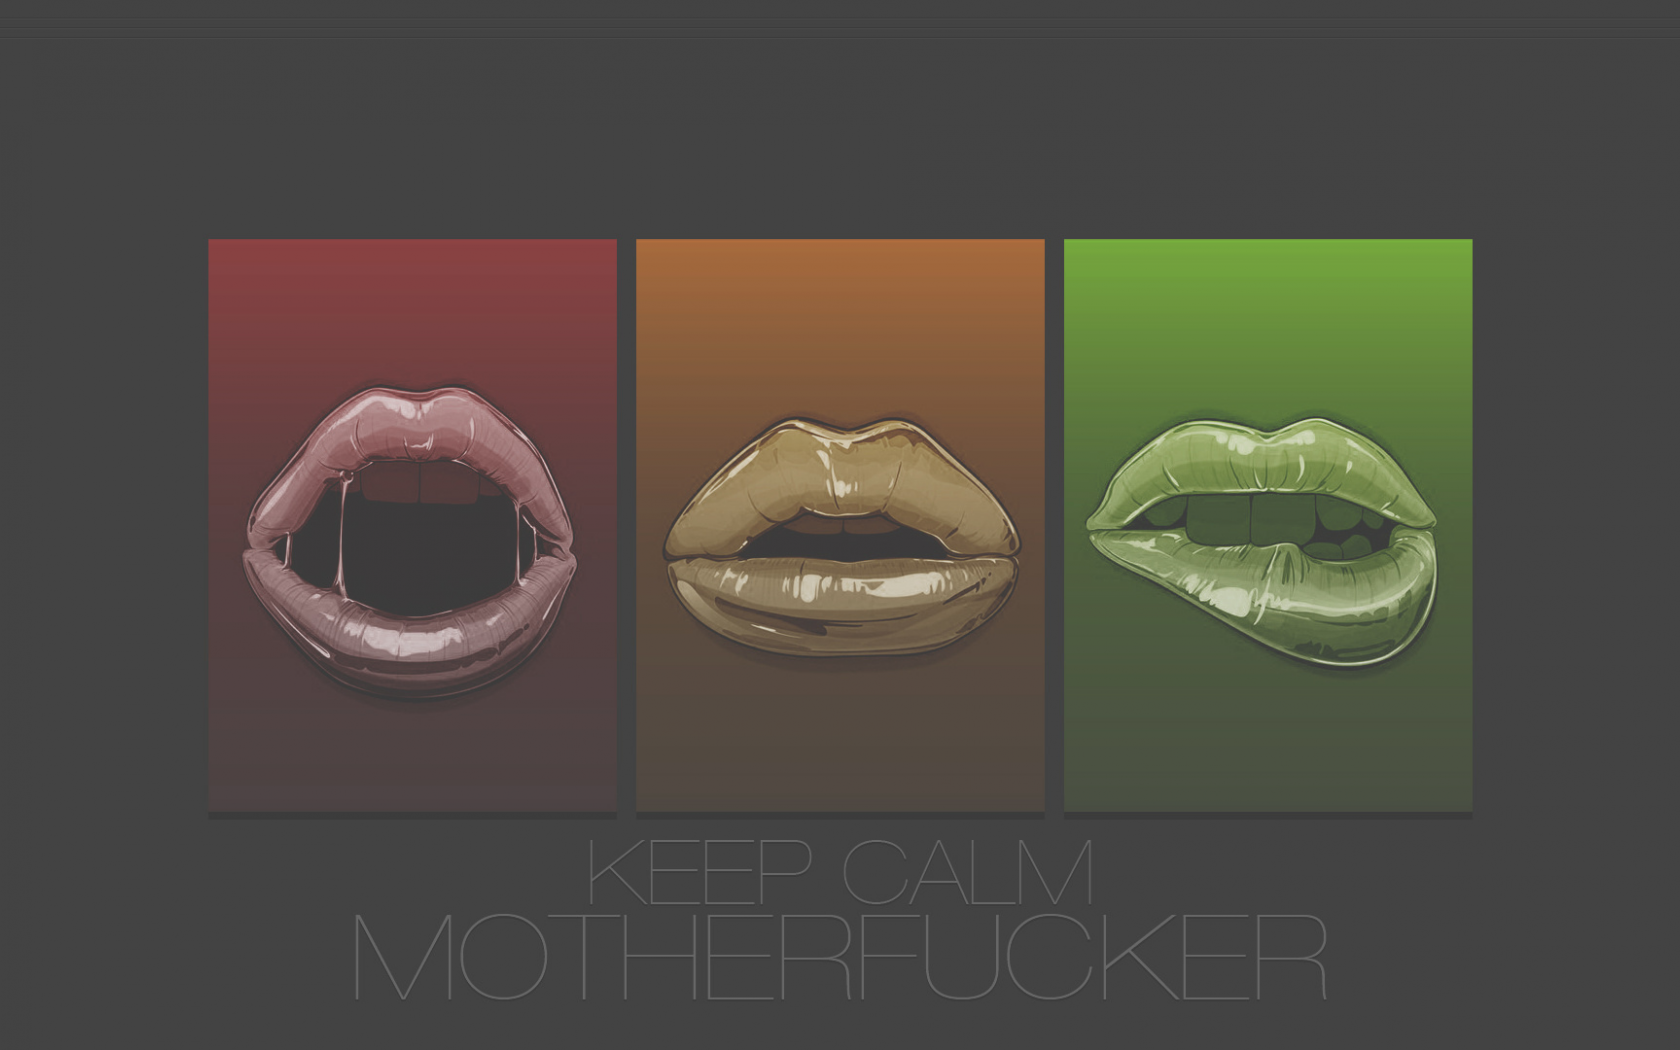 губы, calm, keep